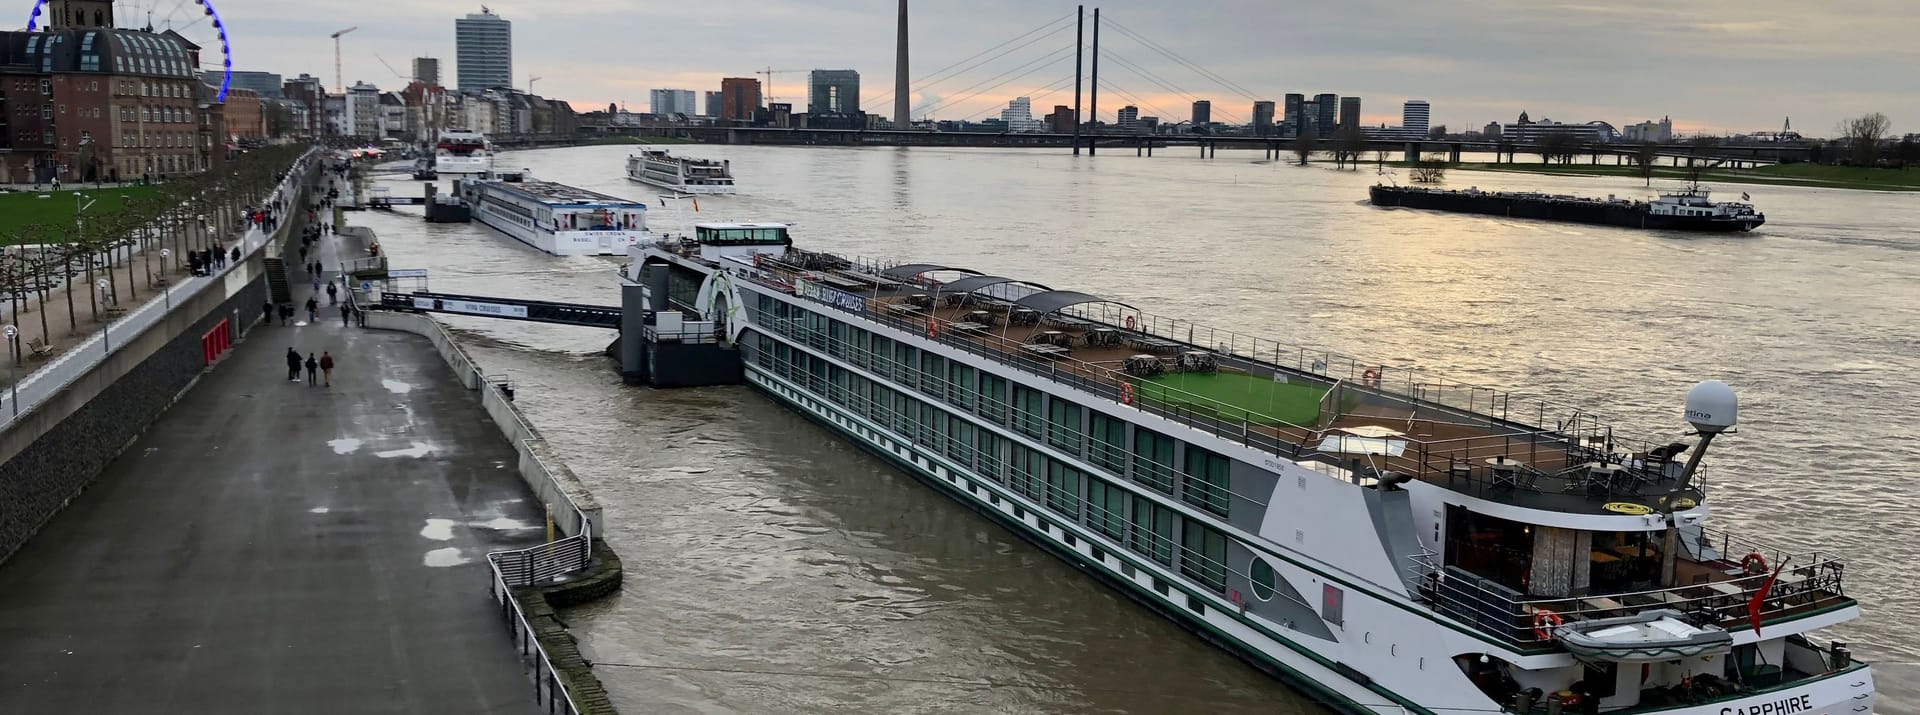 Seit Mittwoch sinkt der Rhein in Düsseldorf wieder.